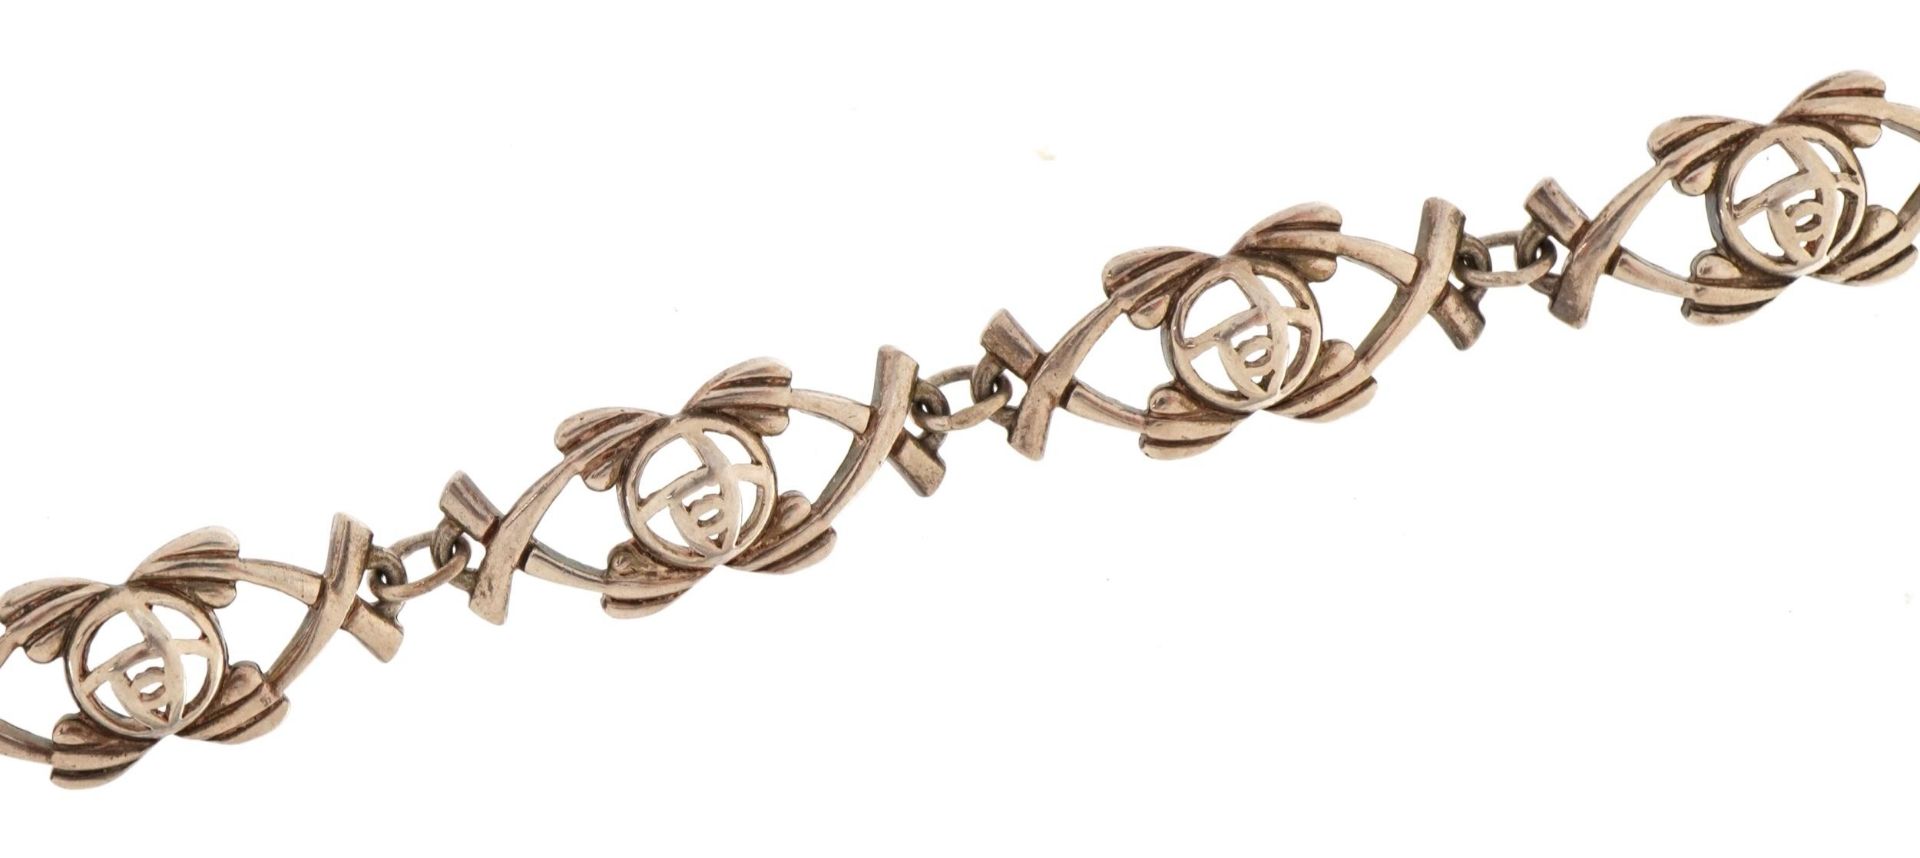 Stylish silver rose design bracelet stamped 925, 18cm in length, 12g